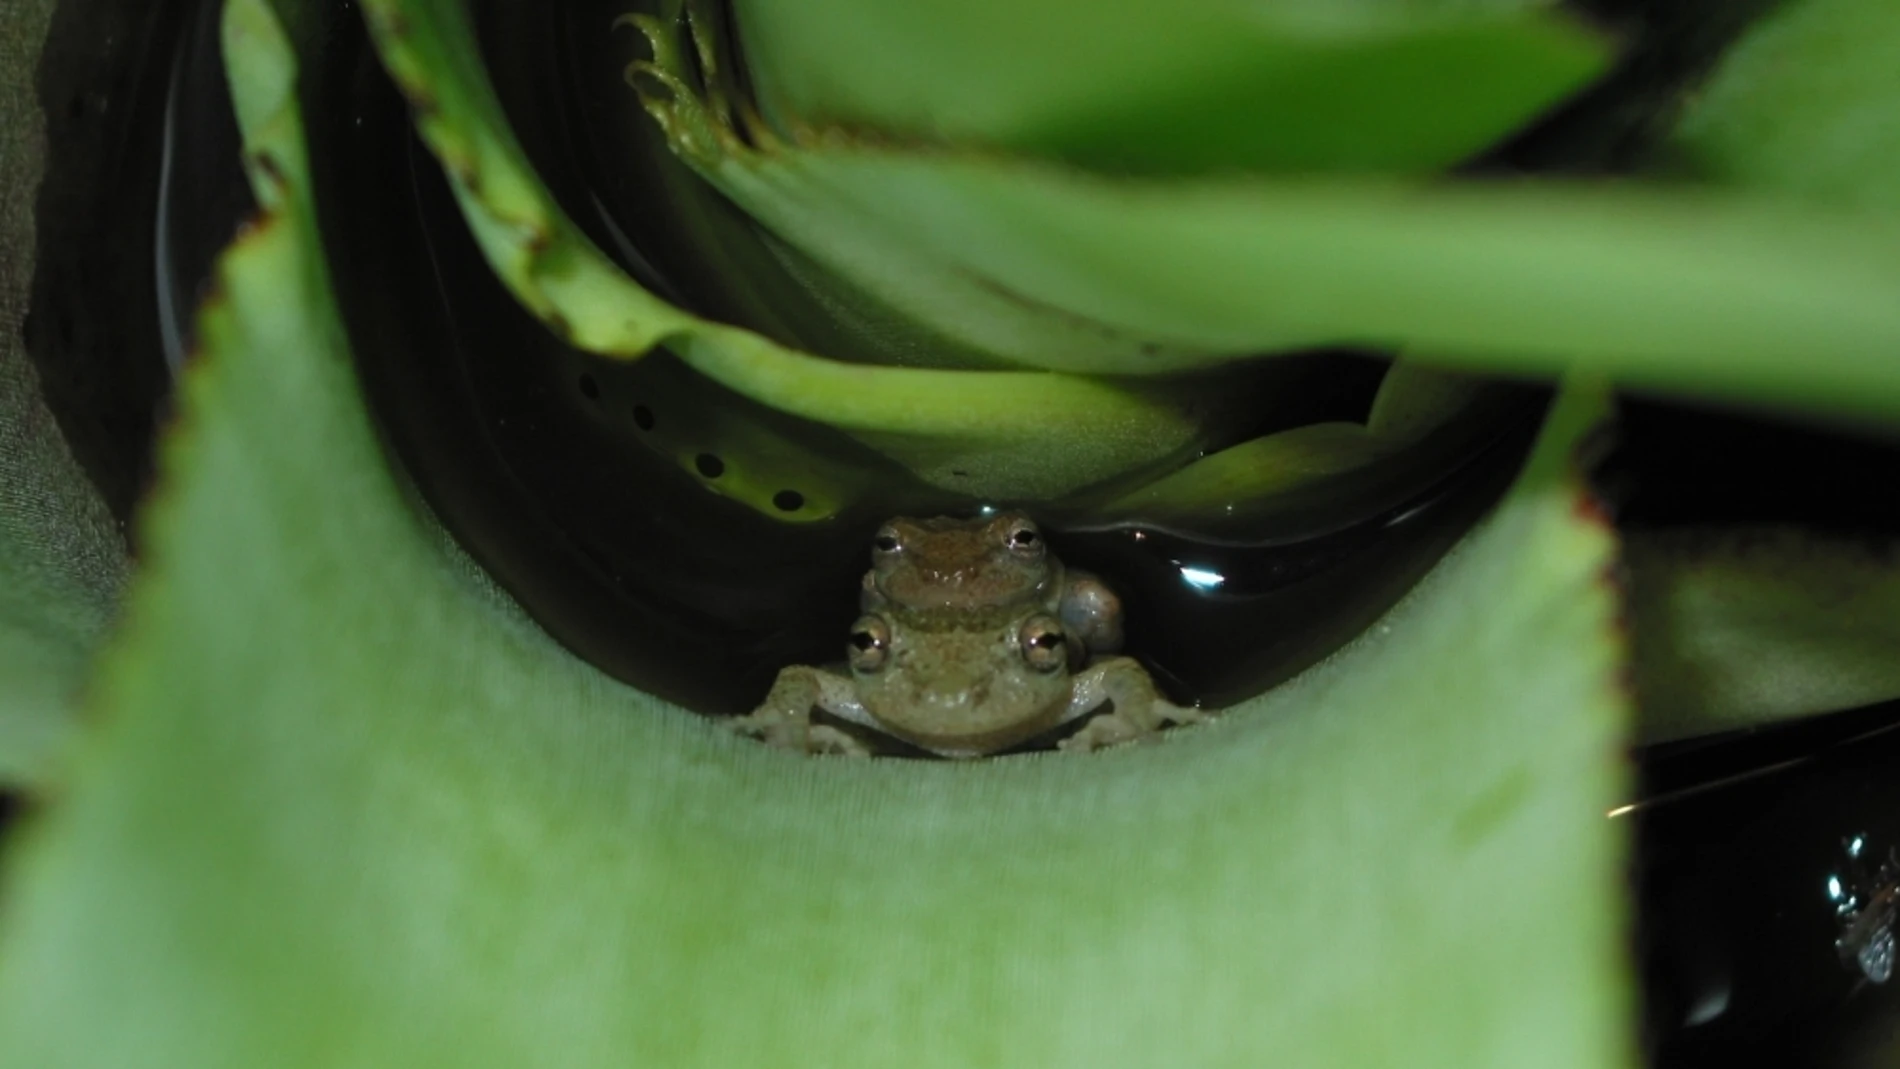 Las ranas empezaron a reproducirse en tierra para disminuir la competencia sexual Pareja de la especie de rana arborícola Scinax alcatraz desovando en agua acumulada en bromeliácea (foto: Kelly Zamudio).